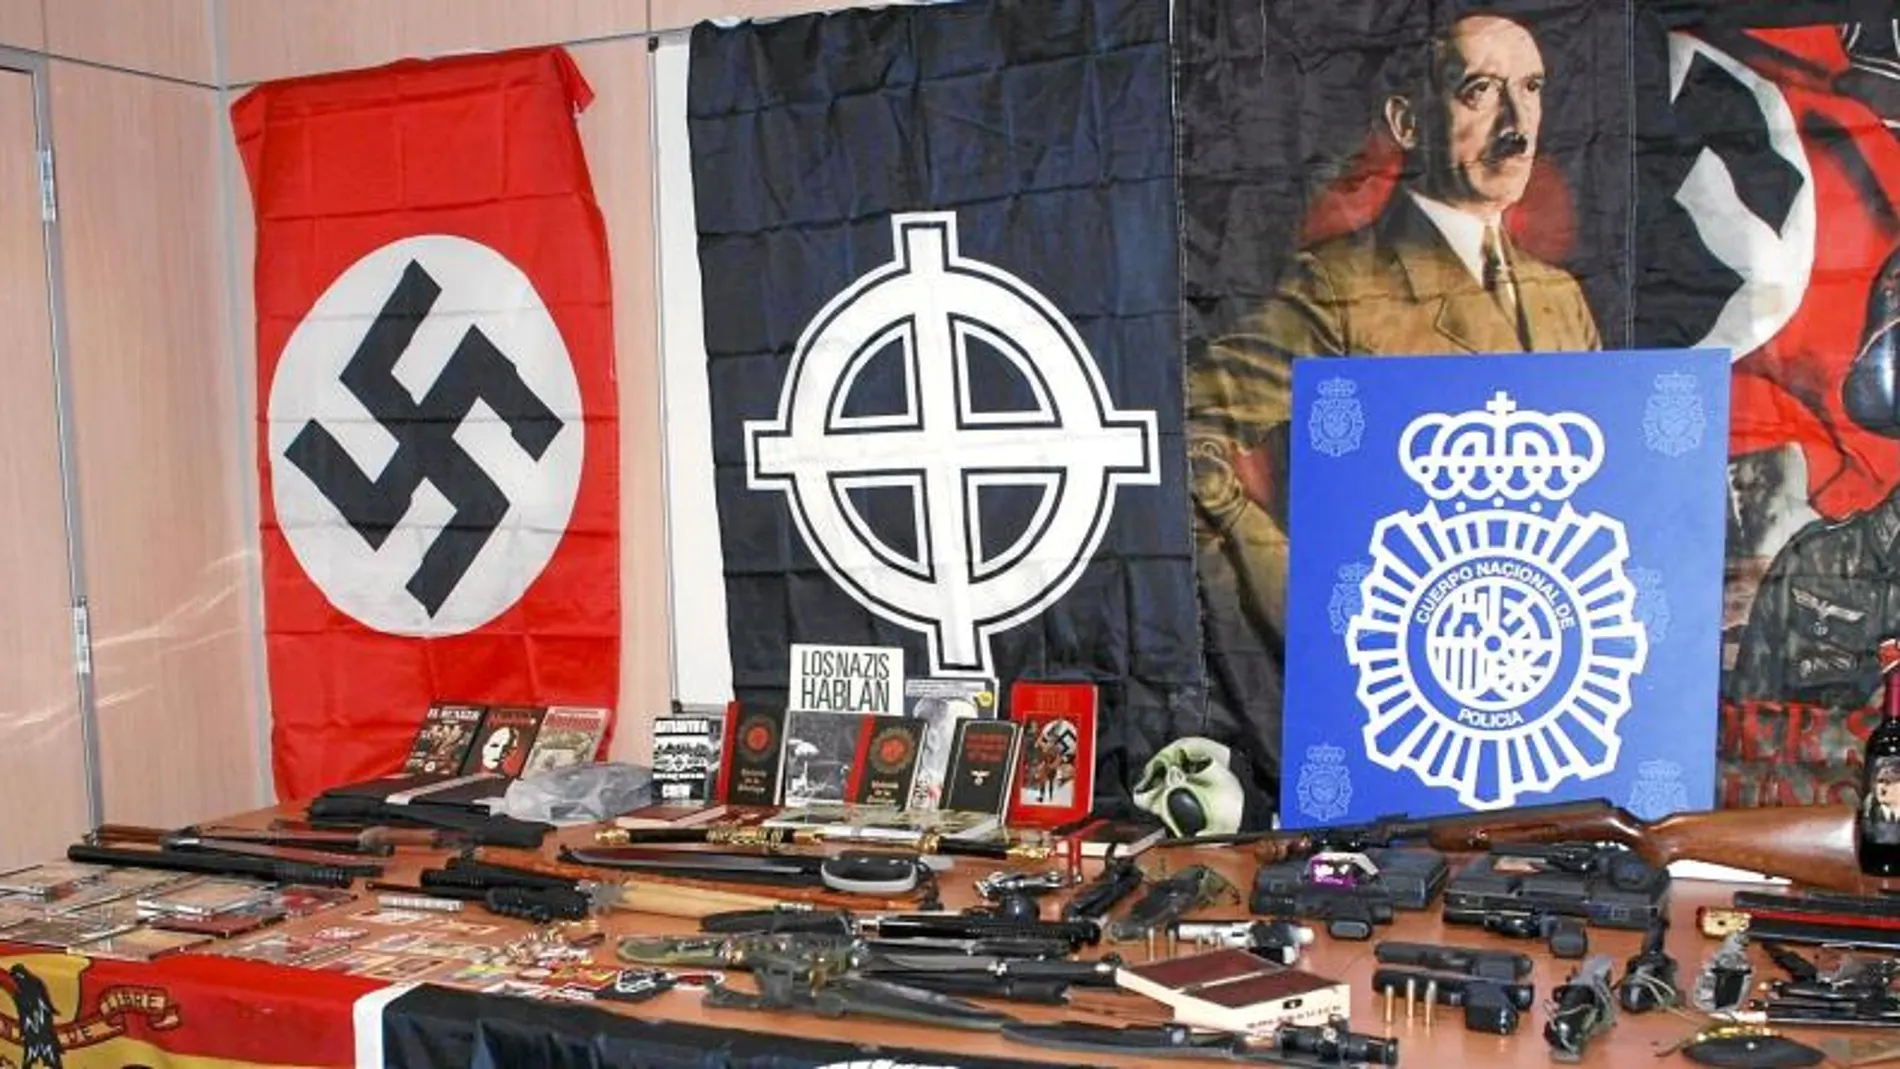 El detenido tenía en su casa de Sabadell un auténtico arsenal de armas que incluía cuchillos, navajas, espadas samurái y diversas armas de fuego, así como numeroso material de apología del nazismo y el antisemitismo, desde pósters a libros y películas, que propagaba a través de su blog en internet